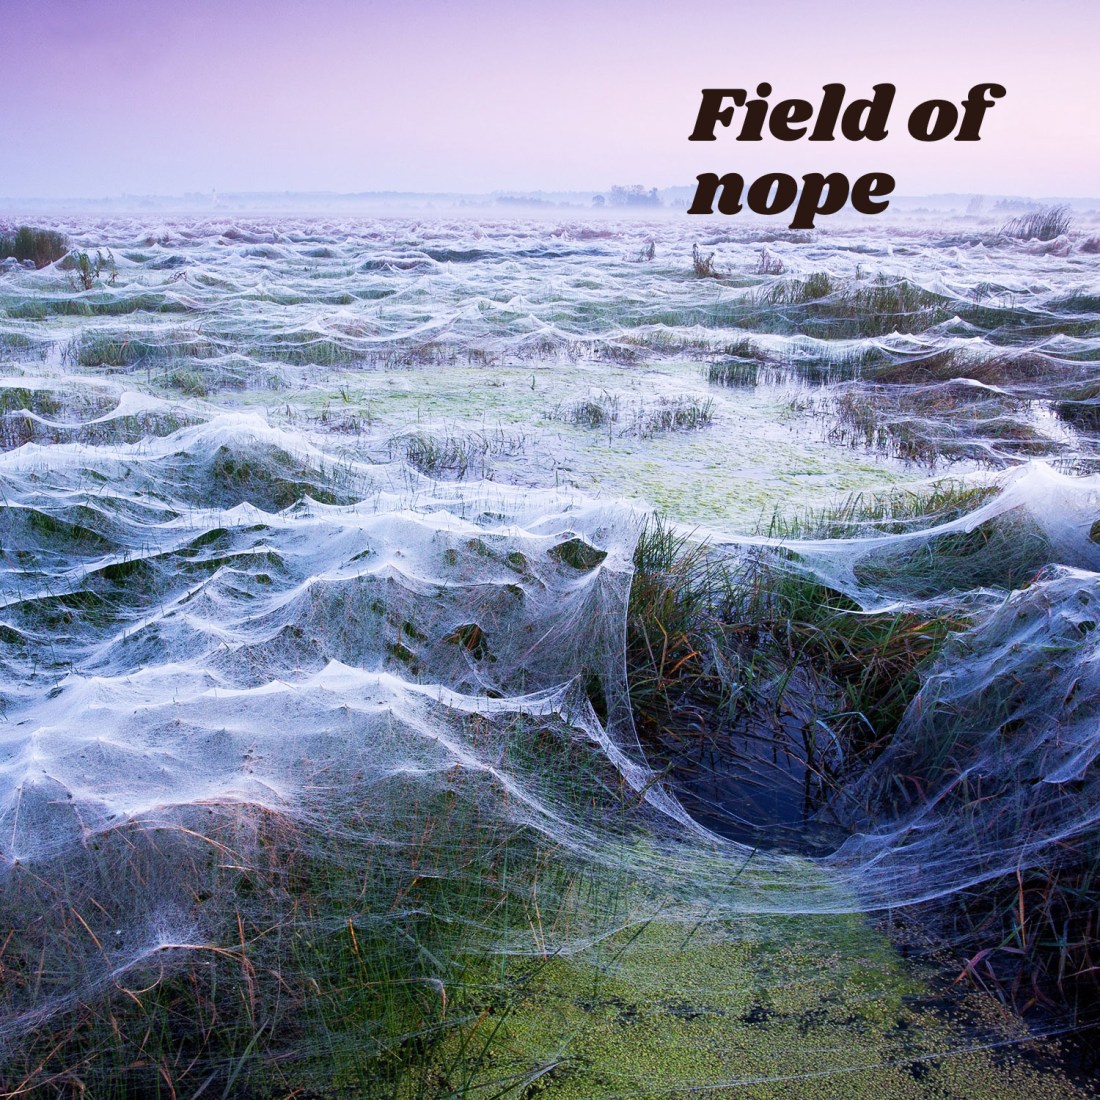 Field of nope